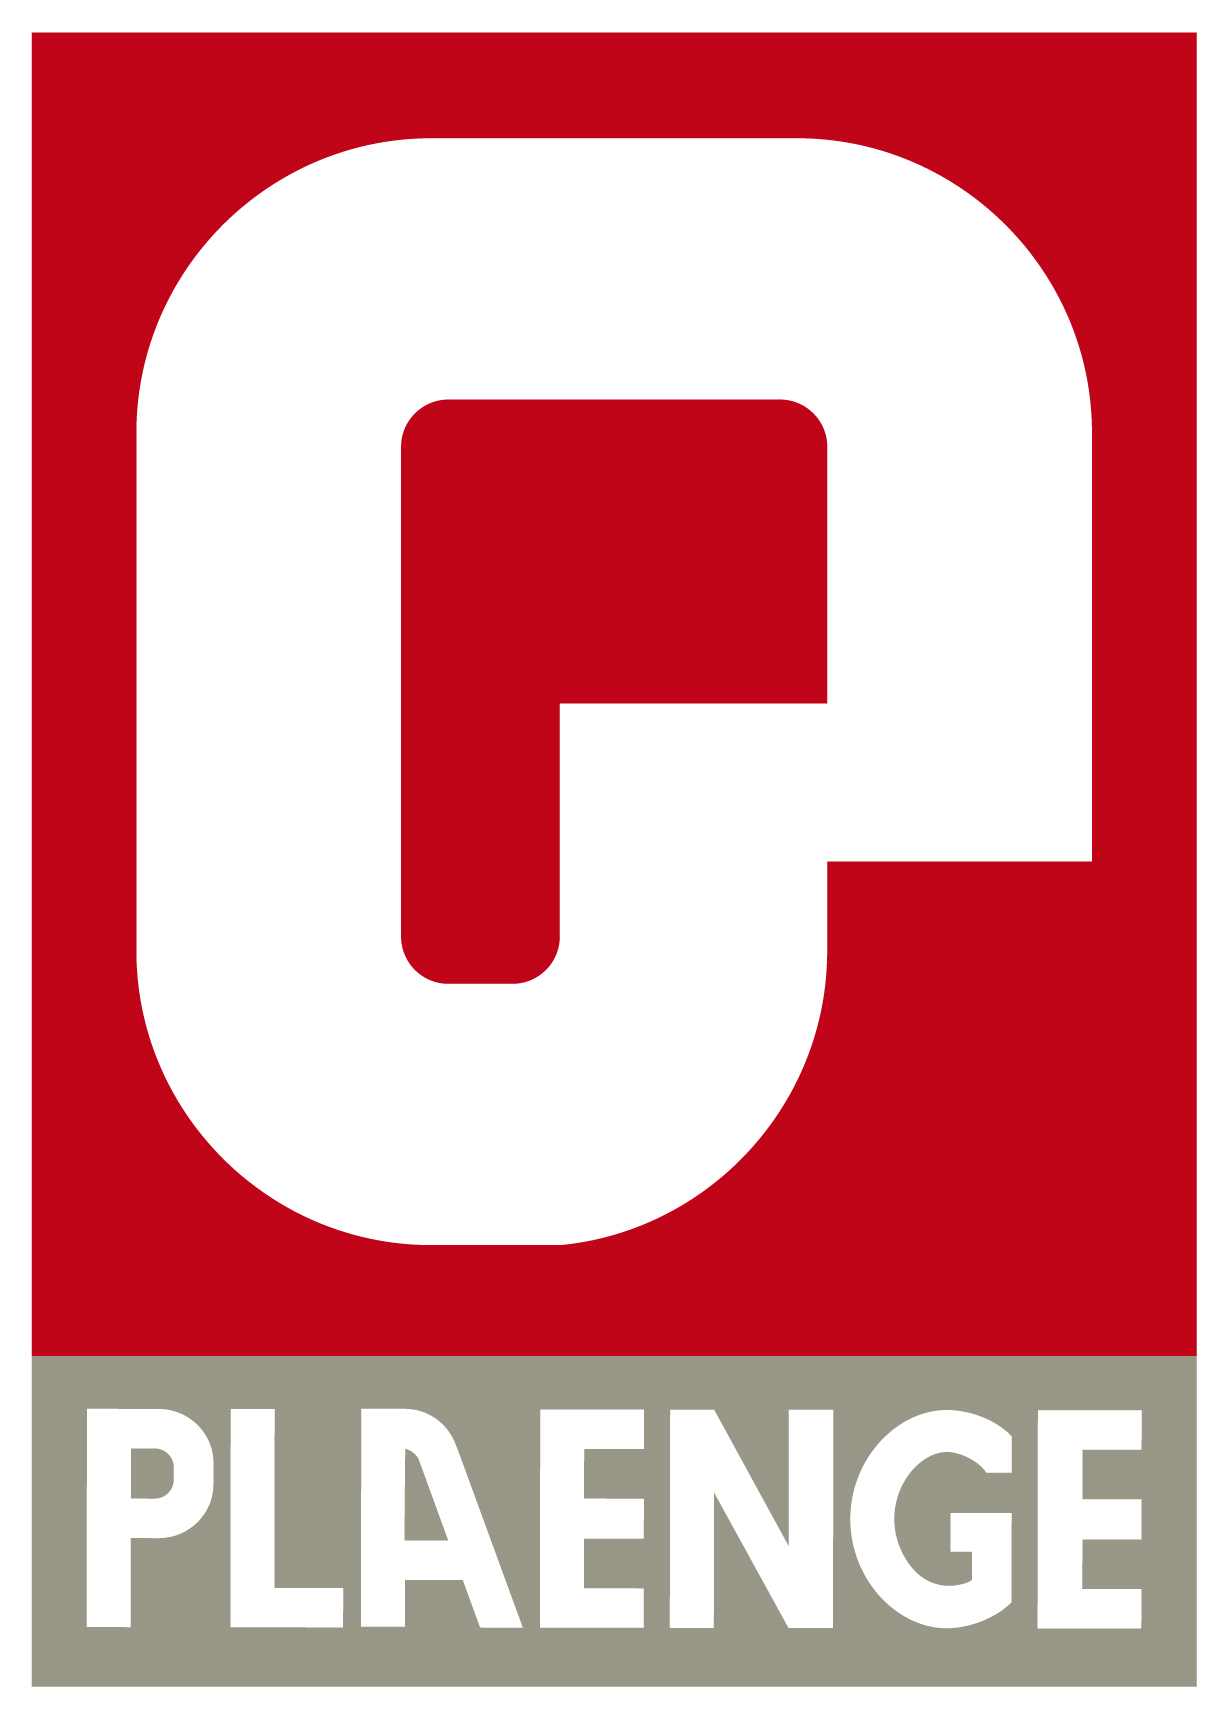 Plaenge Logo photo - 1